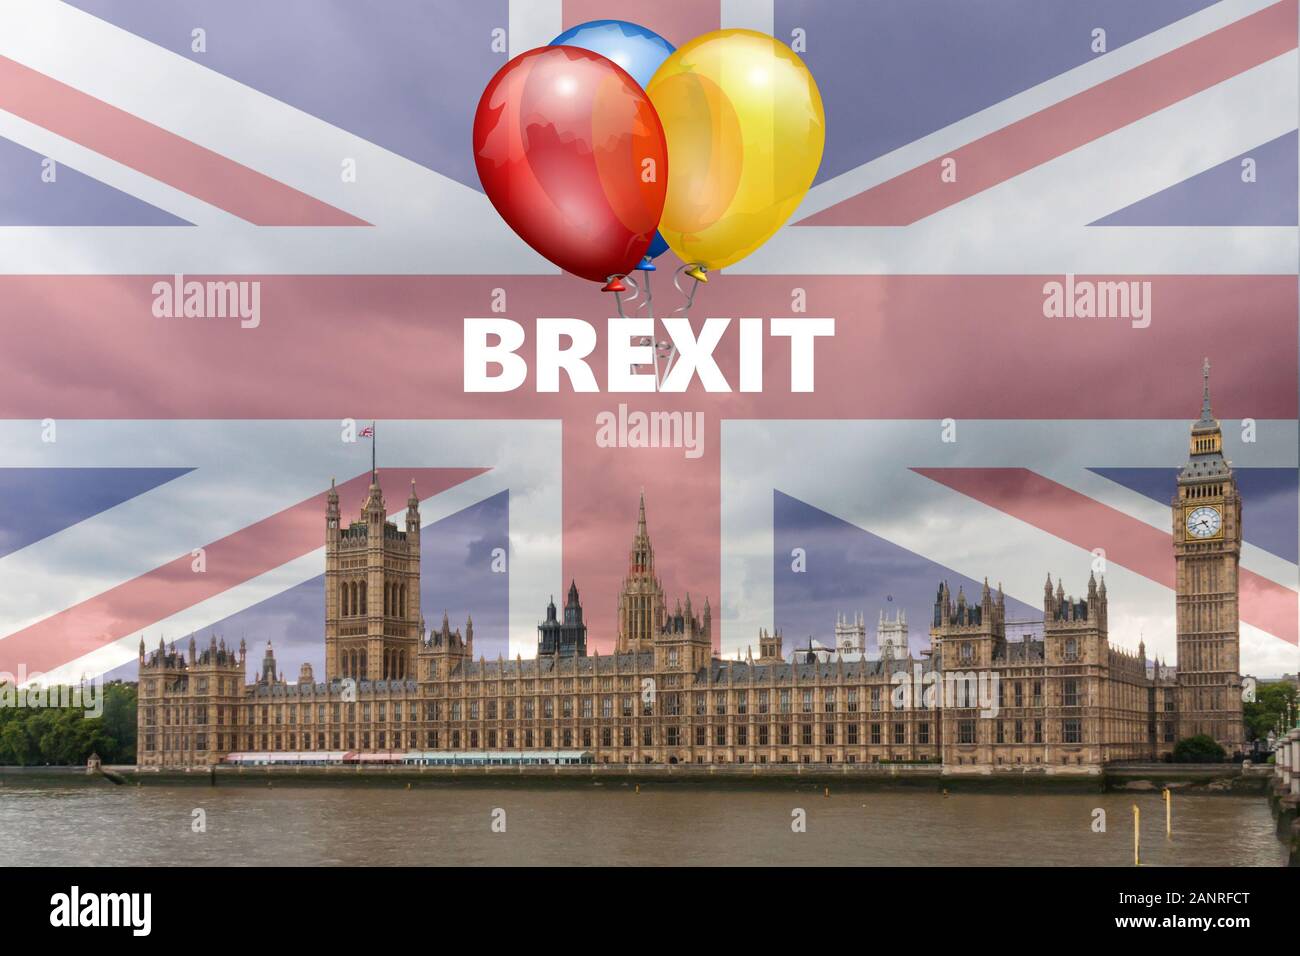 Der Palast von Westminster ak.a. die Häuser des Parlaments mit Brexit text und Luftballons zu feiern aus der Europäischen Union Am 31. Januar 2020 Stockfoto